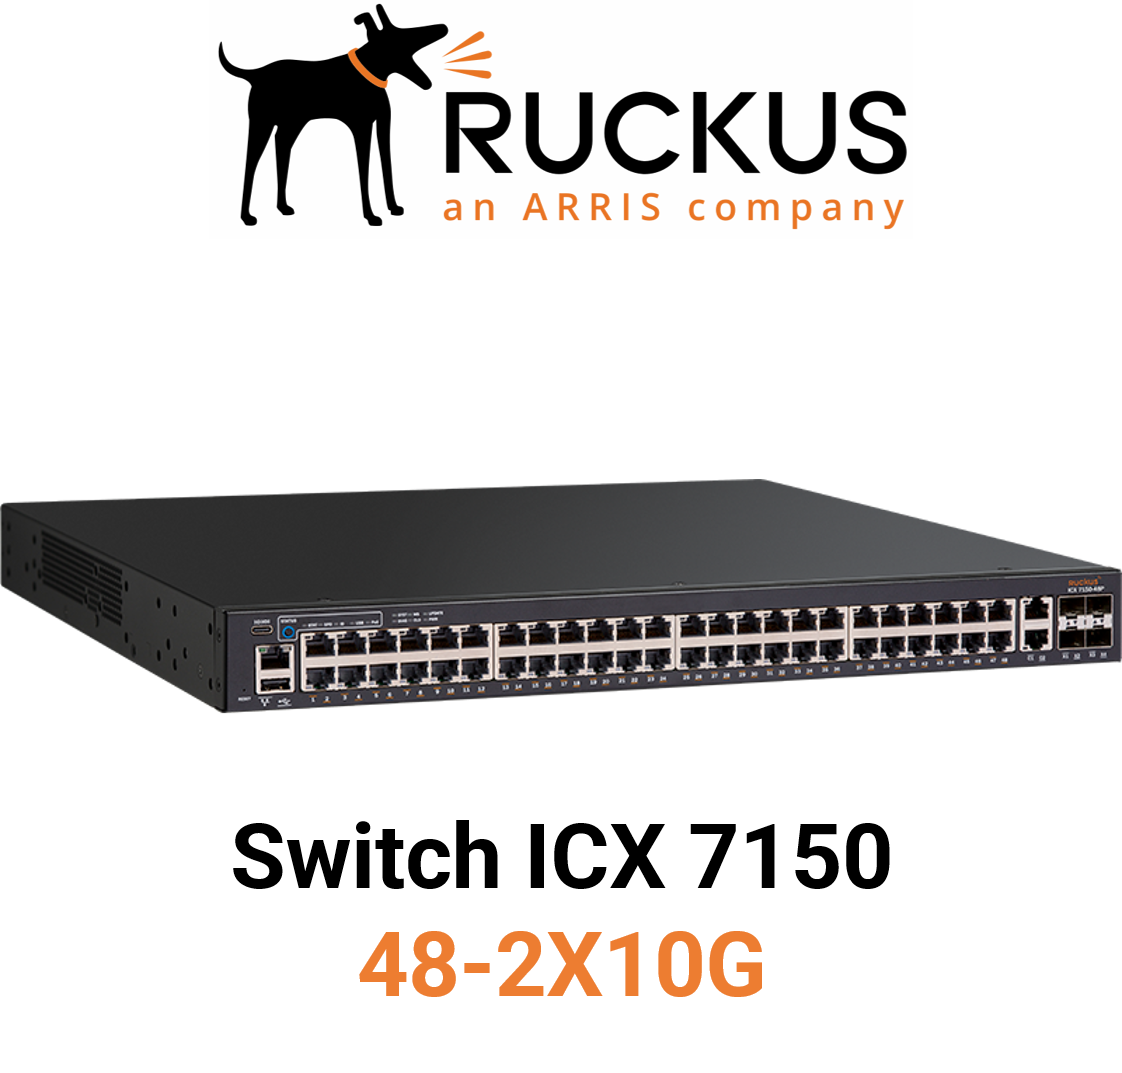 Ruckus ICX7150-48-2X10G Switch